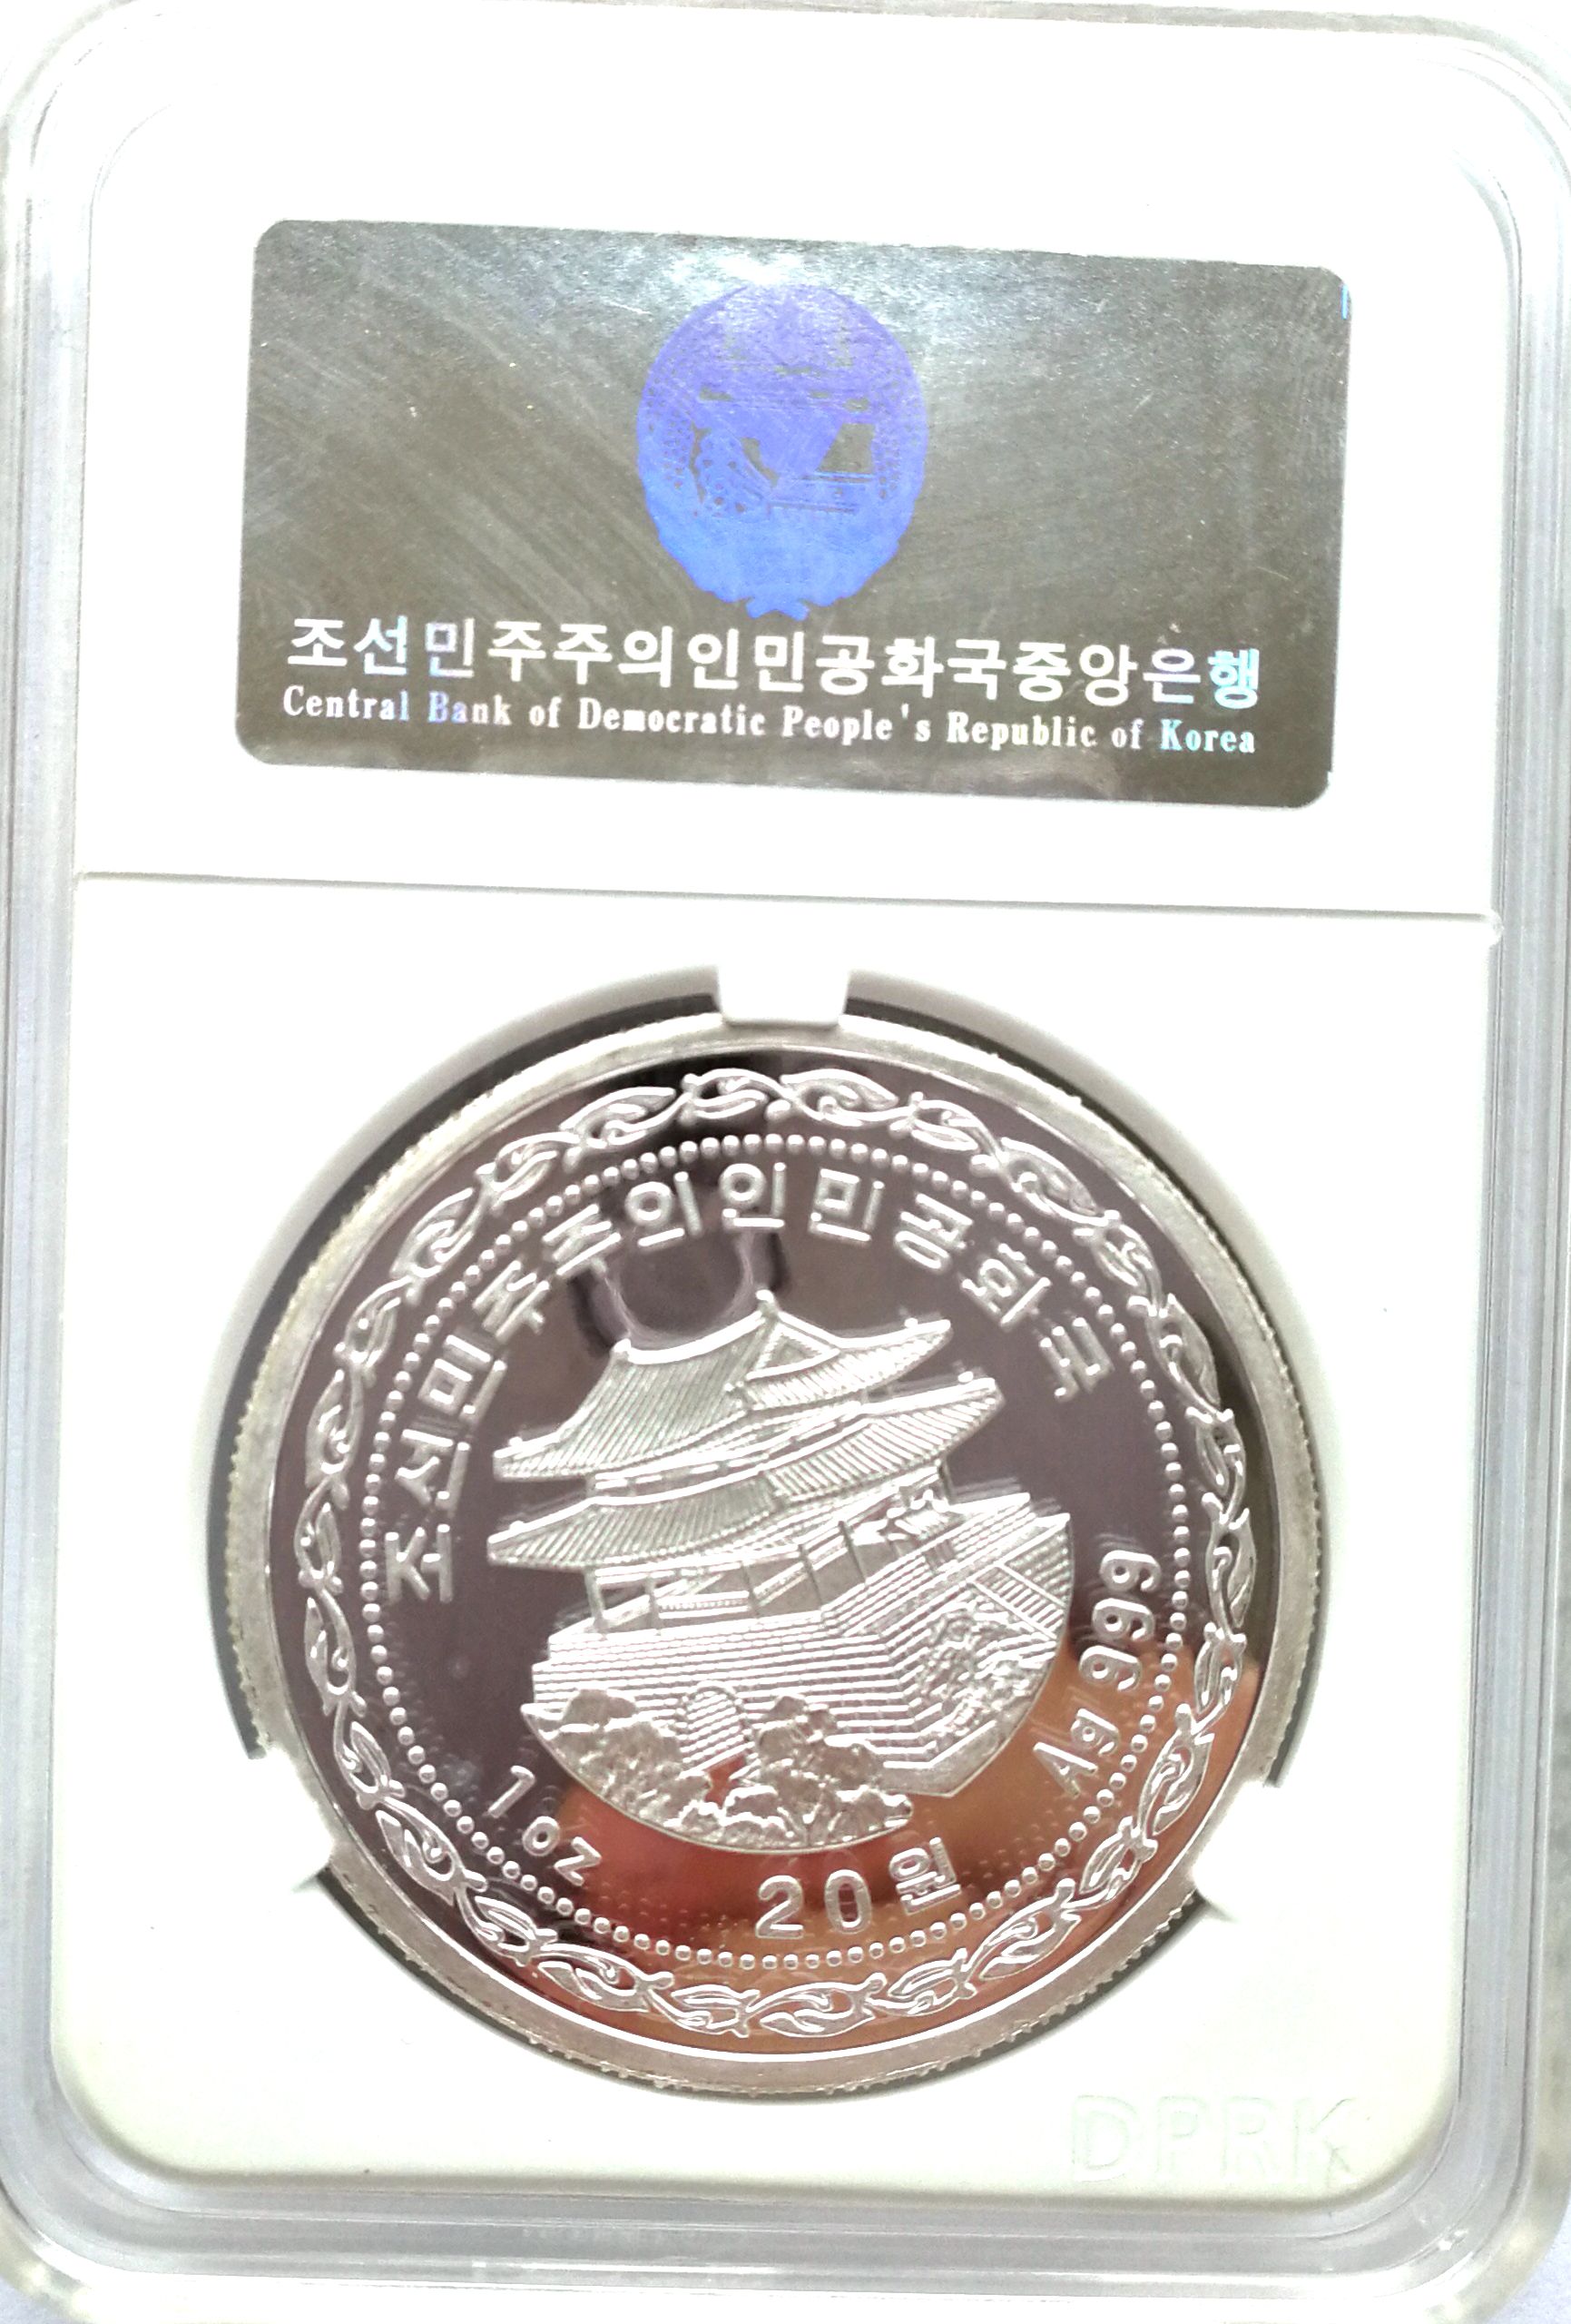 L3582, Korea "Beijing Numismatic Fair" Silver Coin 1 oz, 2017 Korean Grade - Click Image to Close